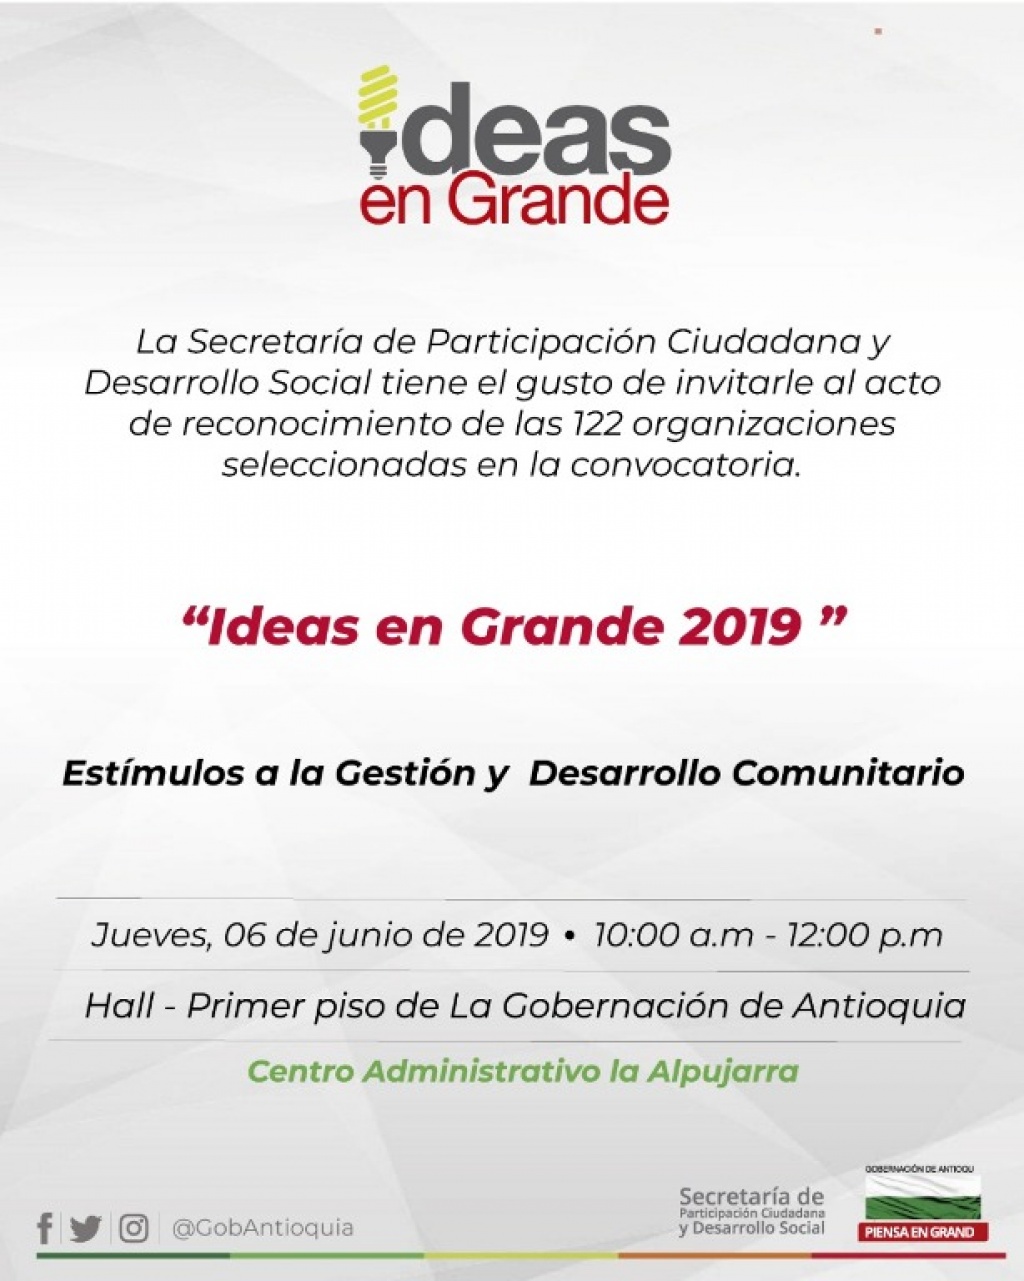 Invitación: Ideas en Grande 2019, estímulos a la Gestión y Desarrollo Comunitario